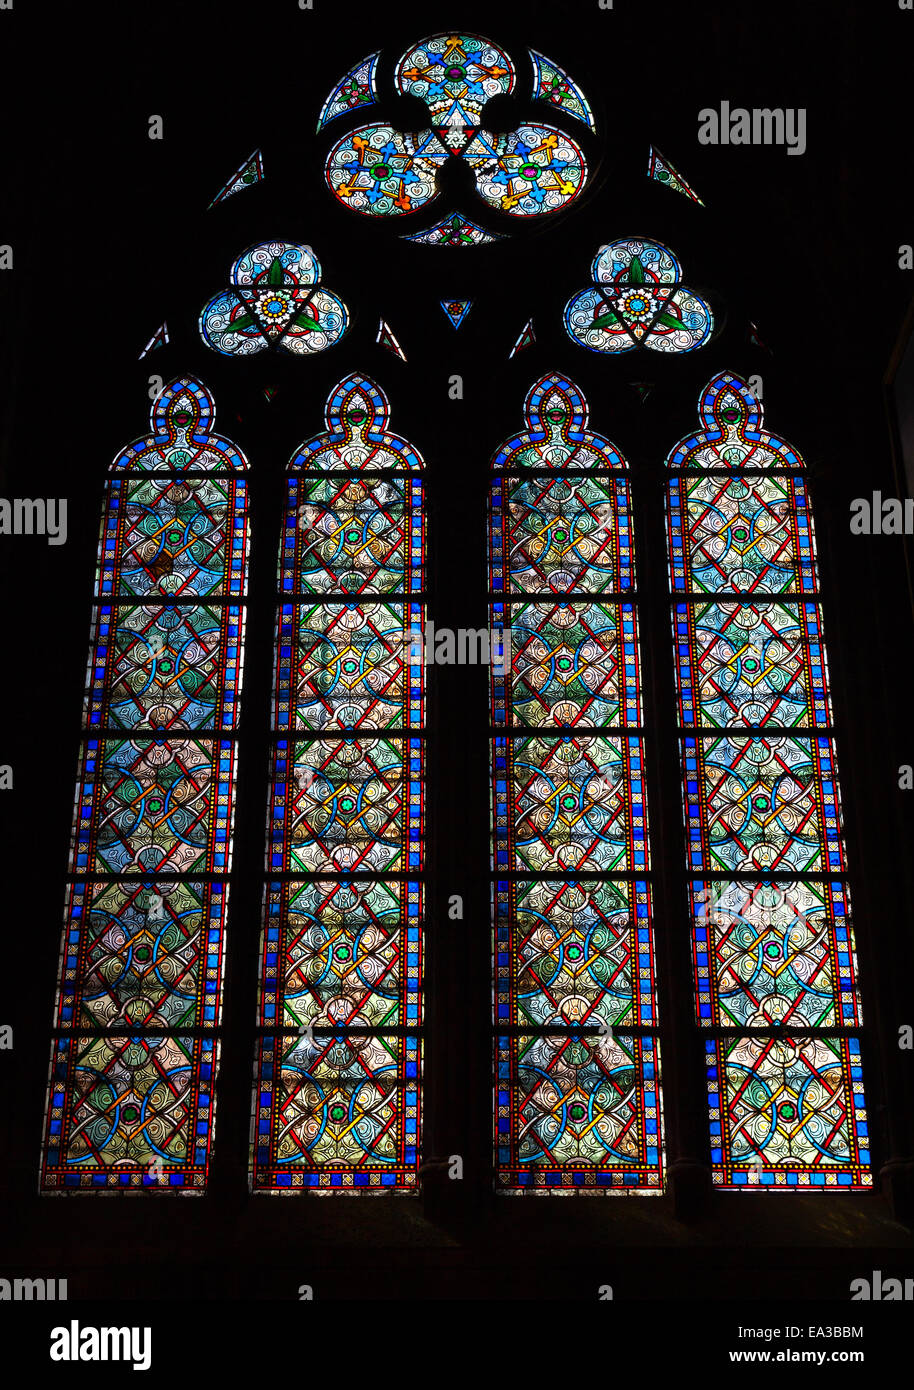 Paris, France - 11 août 2014 : grand vitrail coloré dans l'obscurité de l'intérieur de la cathédrale Notre Dame de Paris Banque D'Images